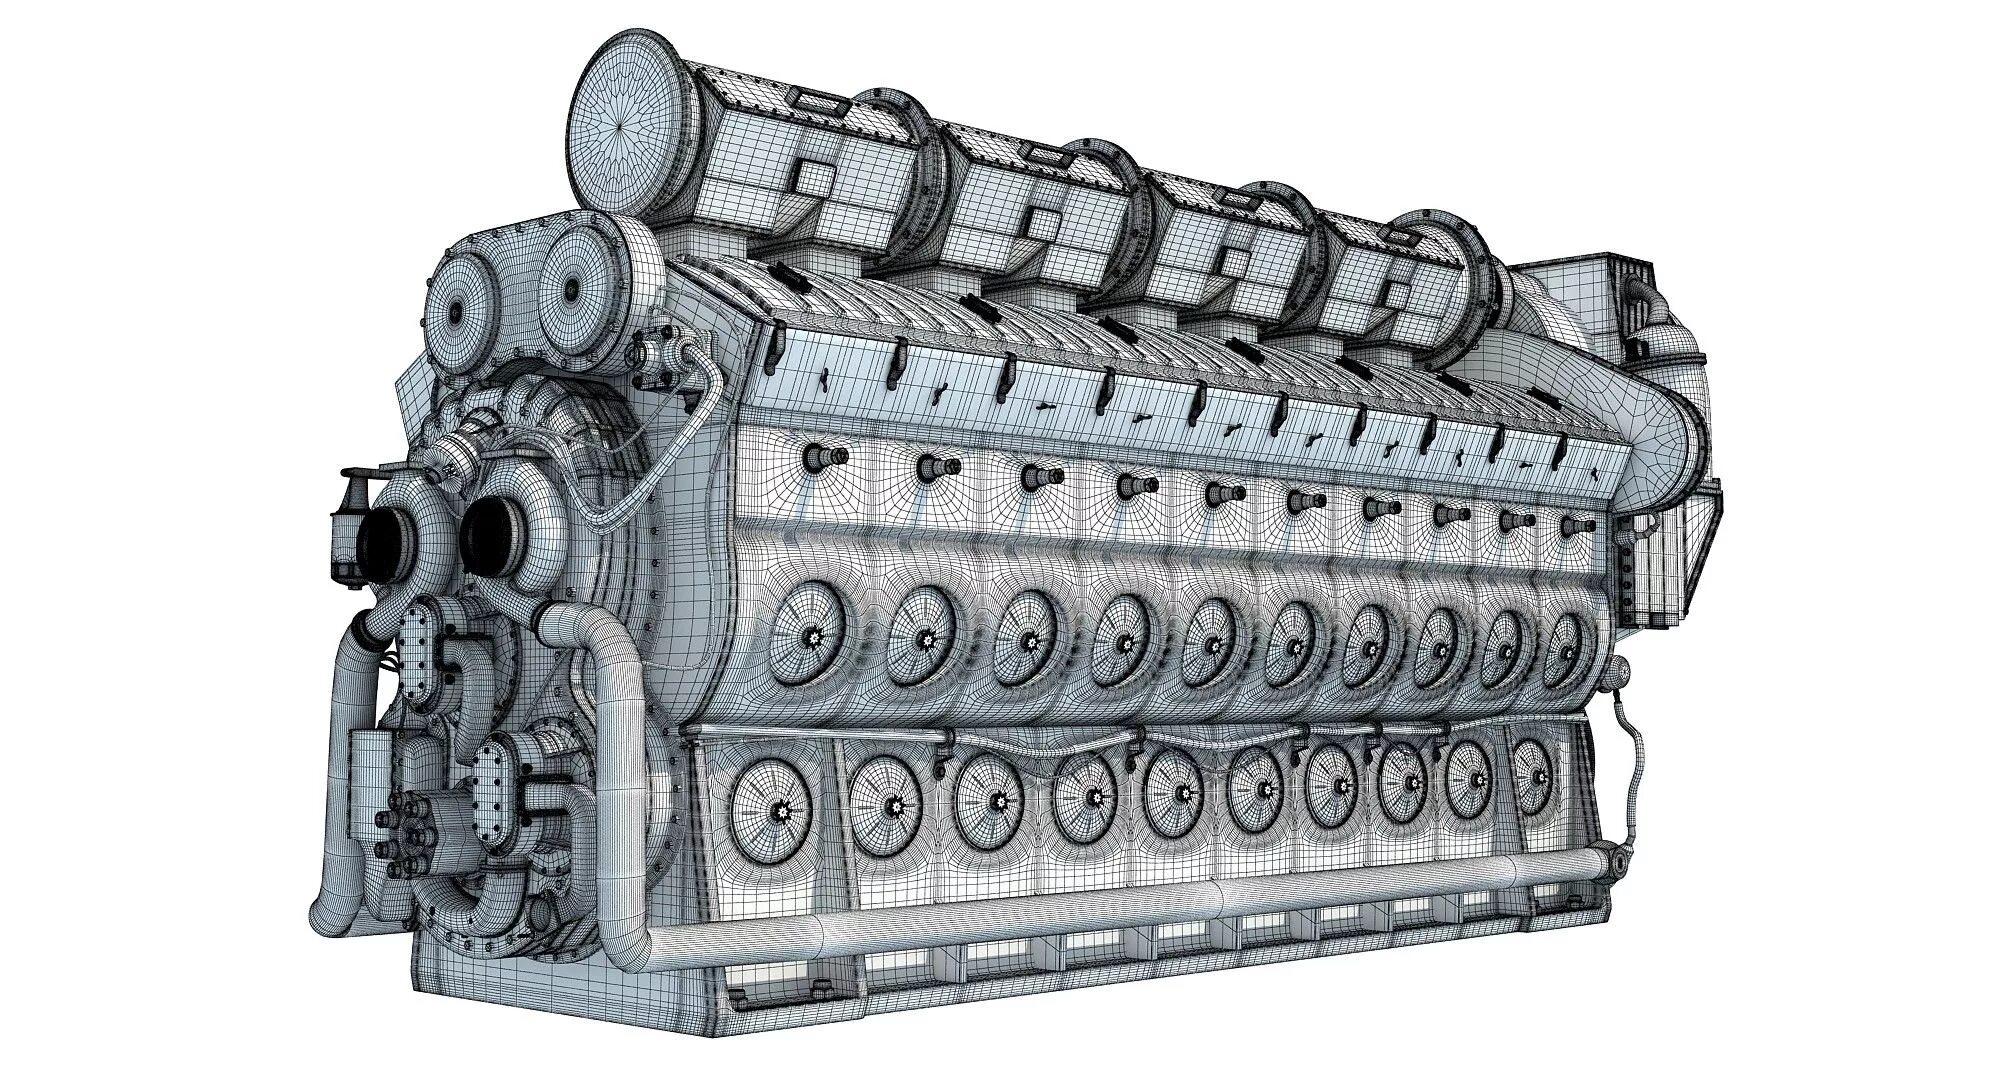 Тяговый электродвигатель РТ-51д. ДВС дизель тепловозный 3d модель. Эд 125б тяговый электродвигатель. Electro-Motive Diesel (EMD).